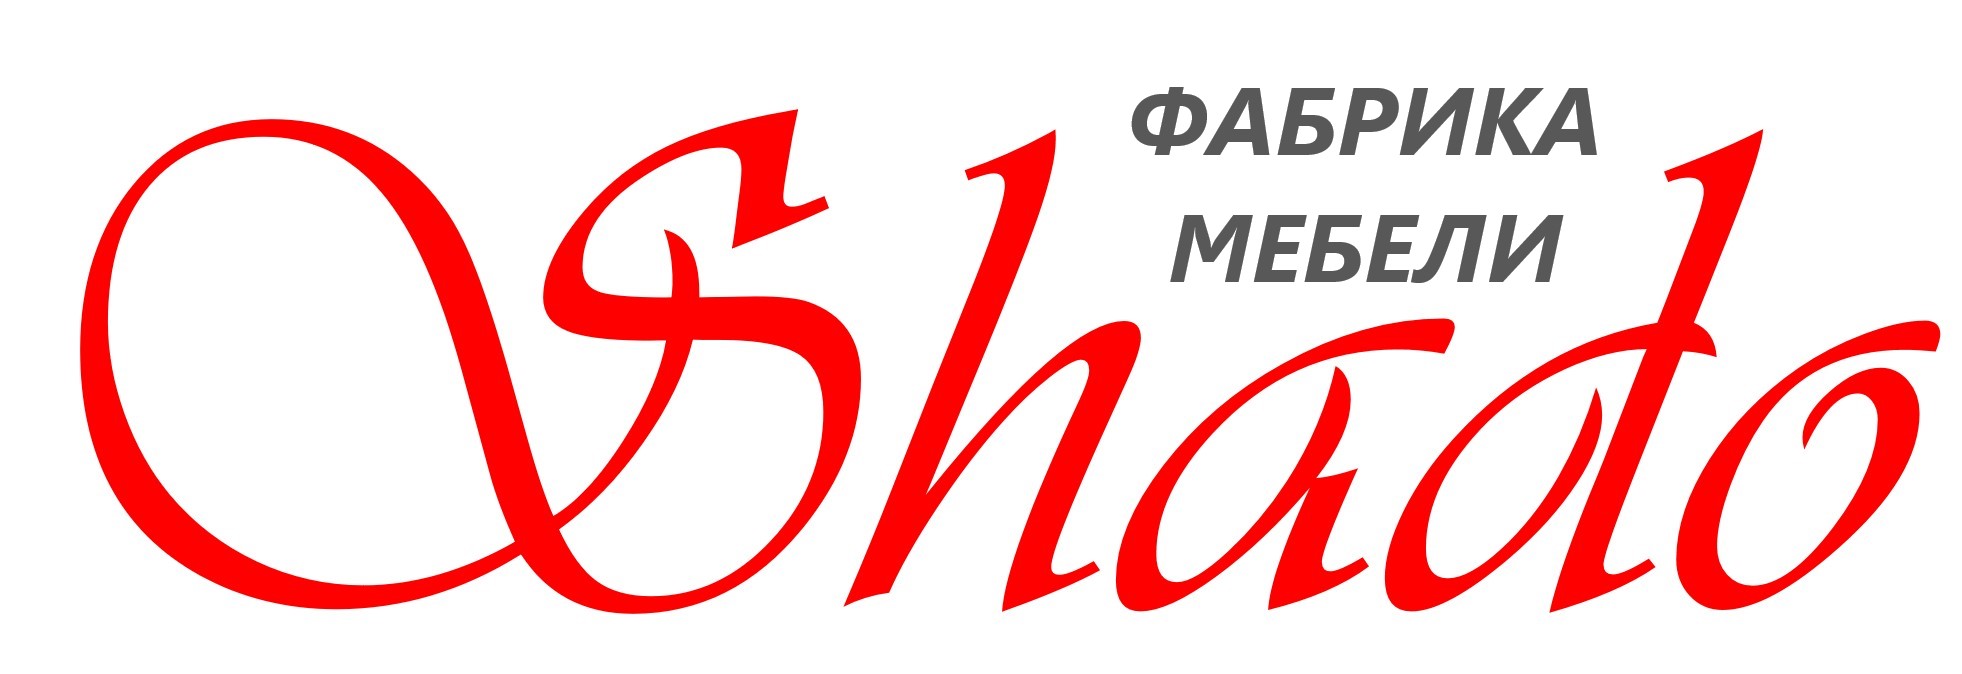 Каталог SHADO в Москве